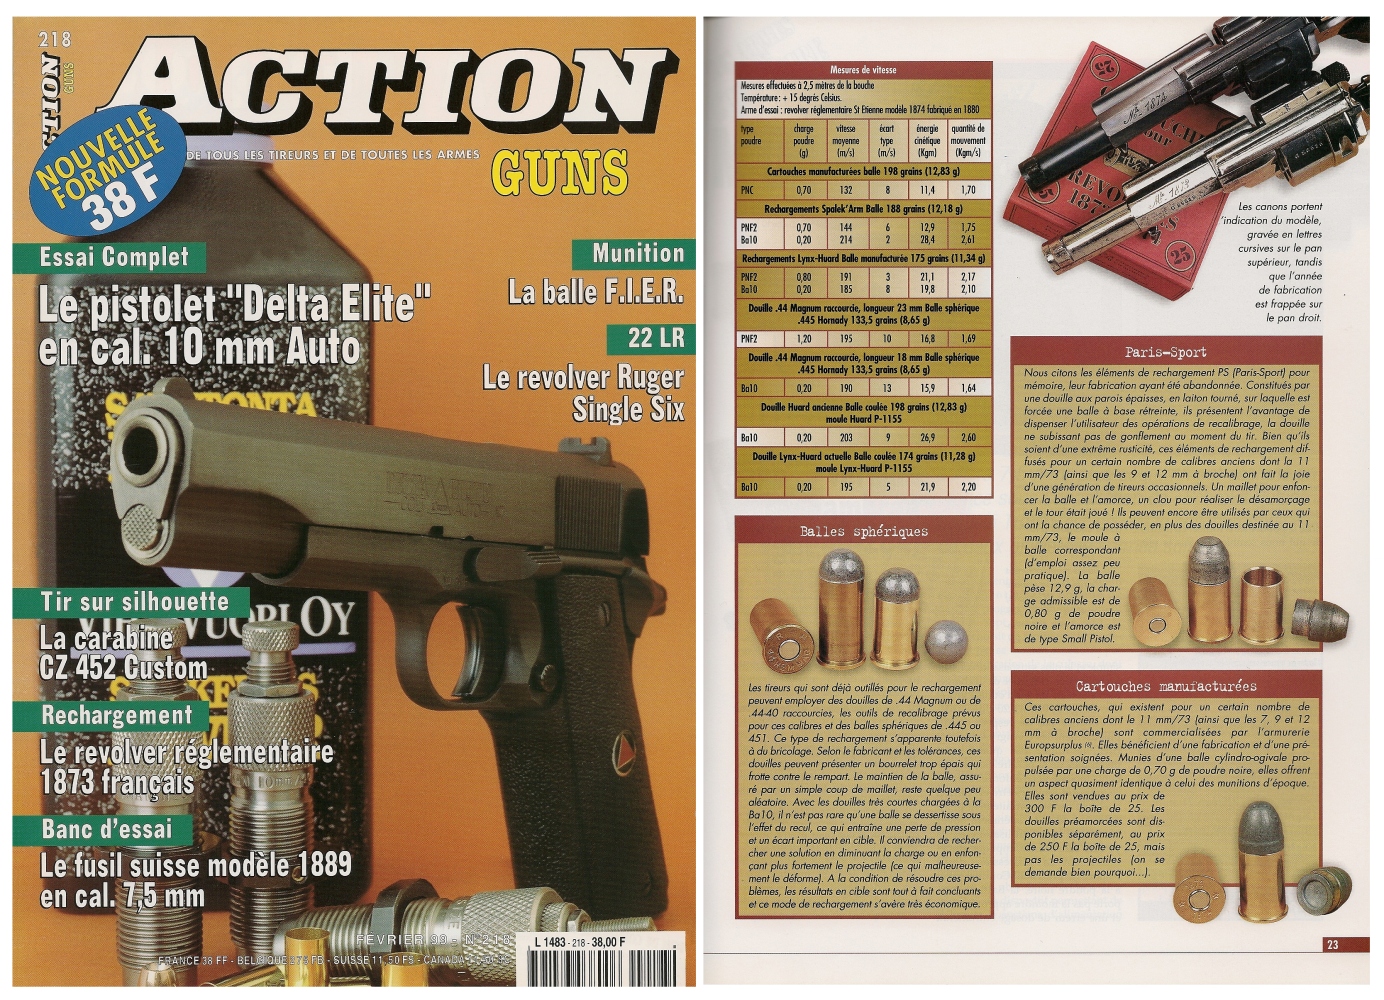 Le banc d’essai du revolver St Etienne modèle 1873 a été publié sur 6 pages dans le magazine Action Guns n°218 (février 1999) 